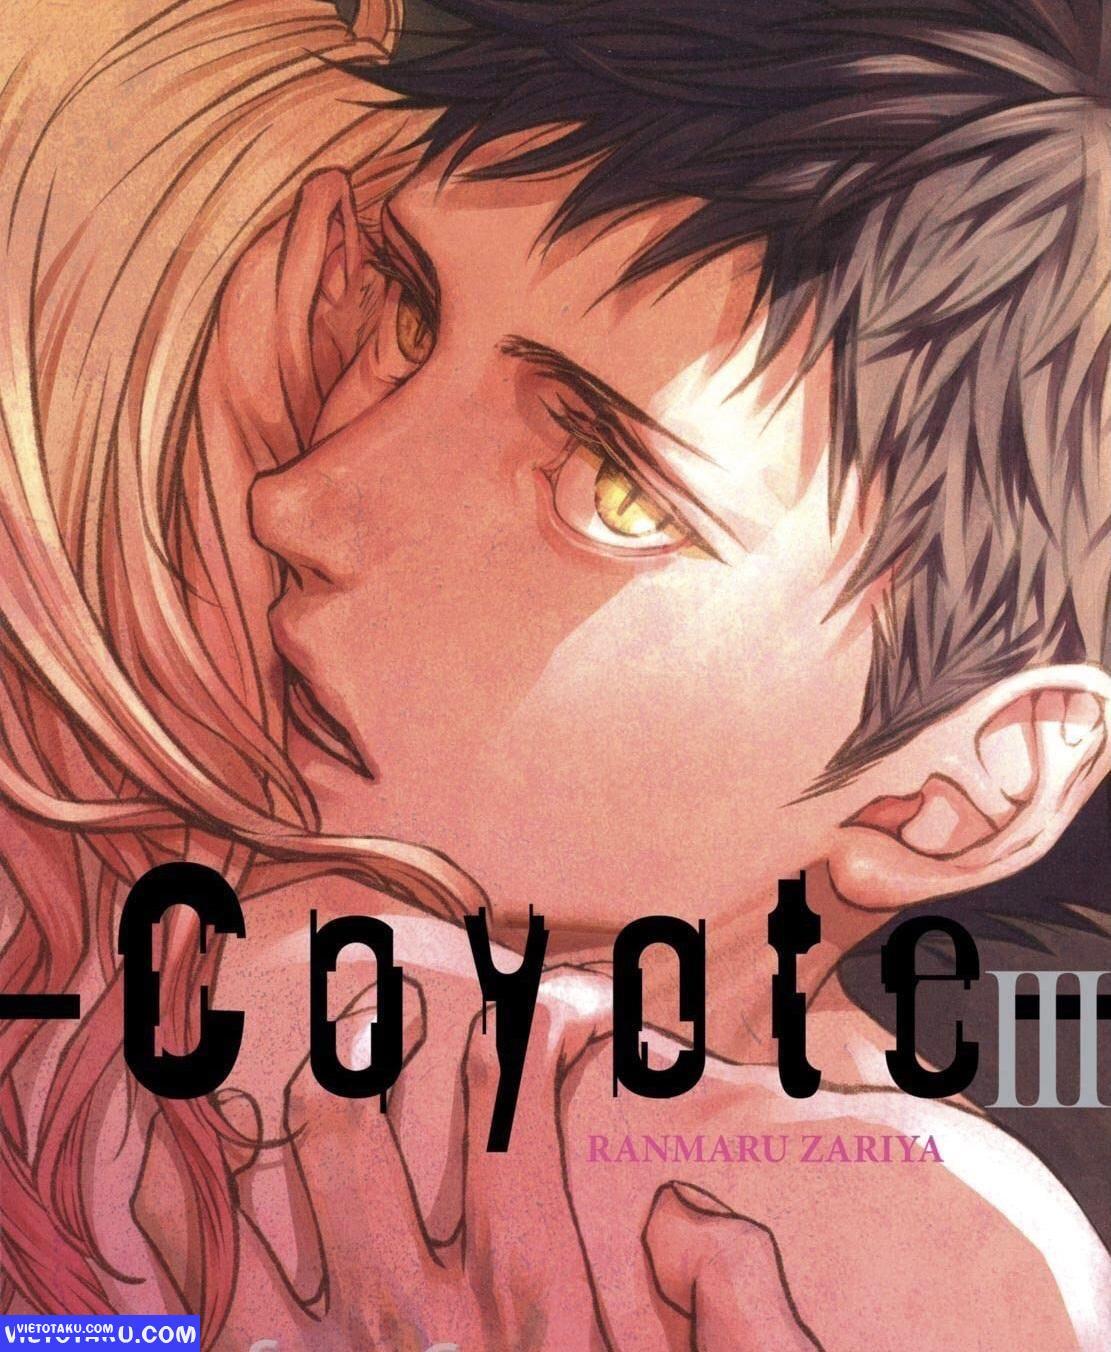 Manga Boylove Coyote III